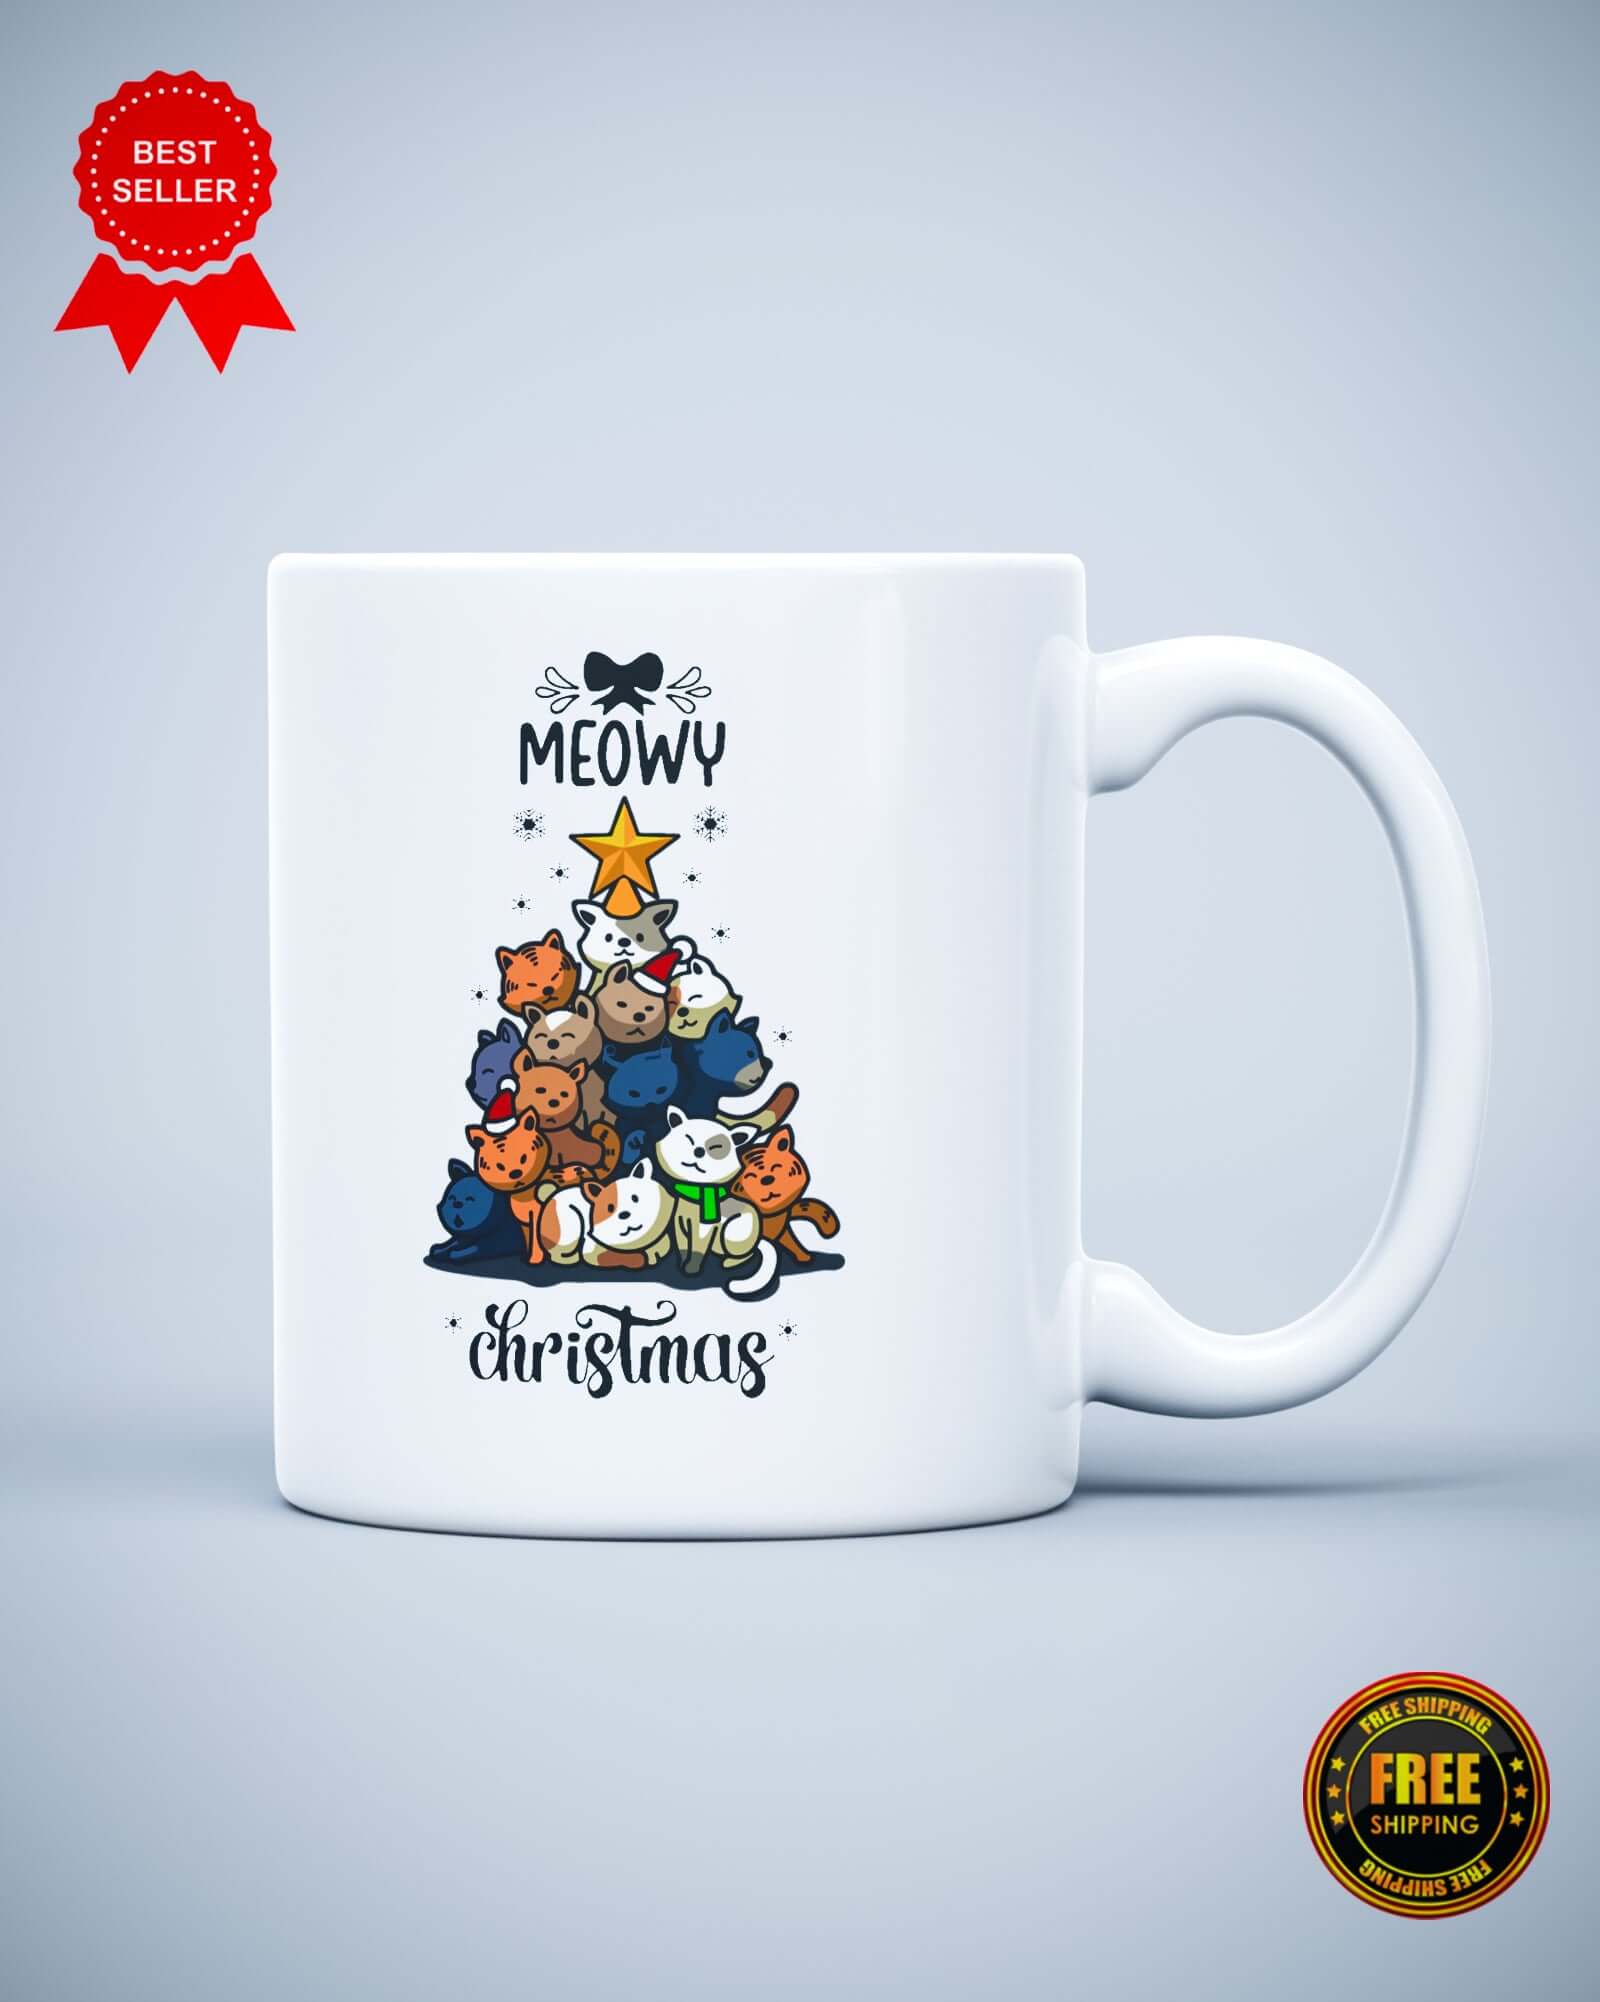 Meowy Christmas Ceramic Mug - ApparelinClick